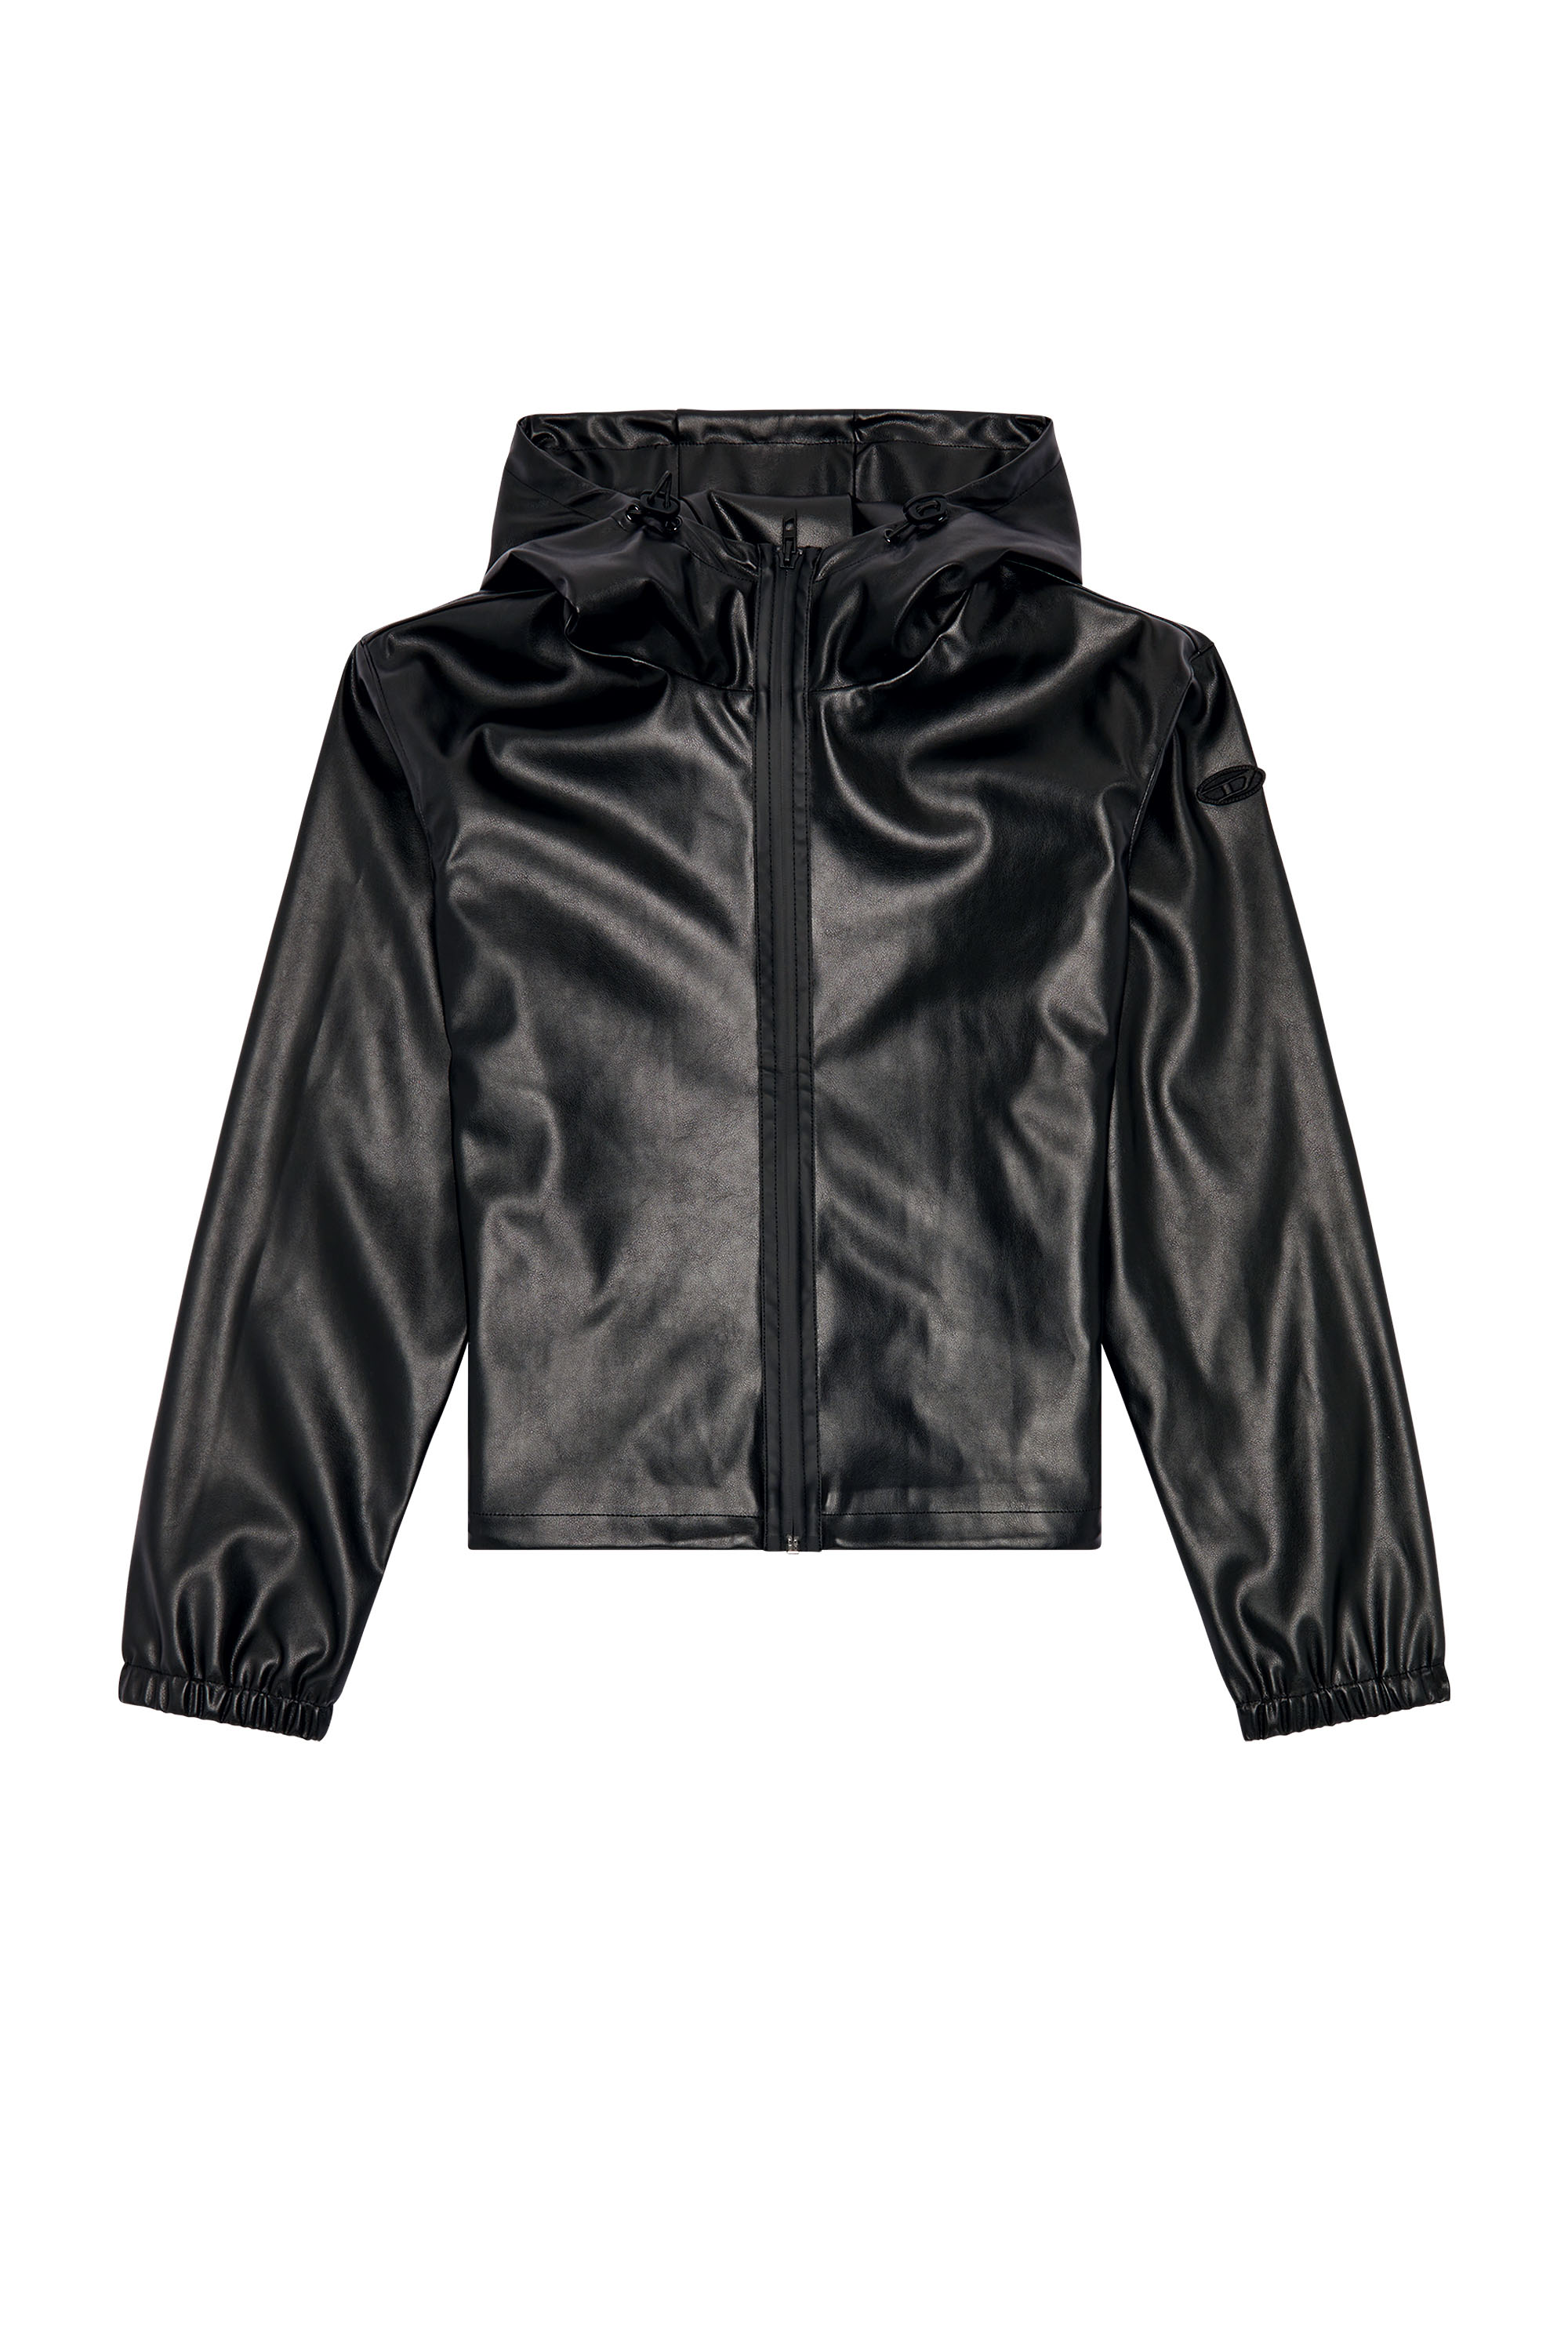 Diesel - G-BONNY-N1, Woman Hooded jacket in coated fabric in Black - Image 5